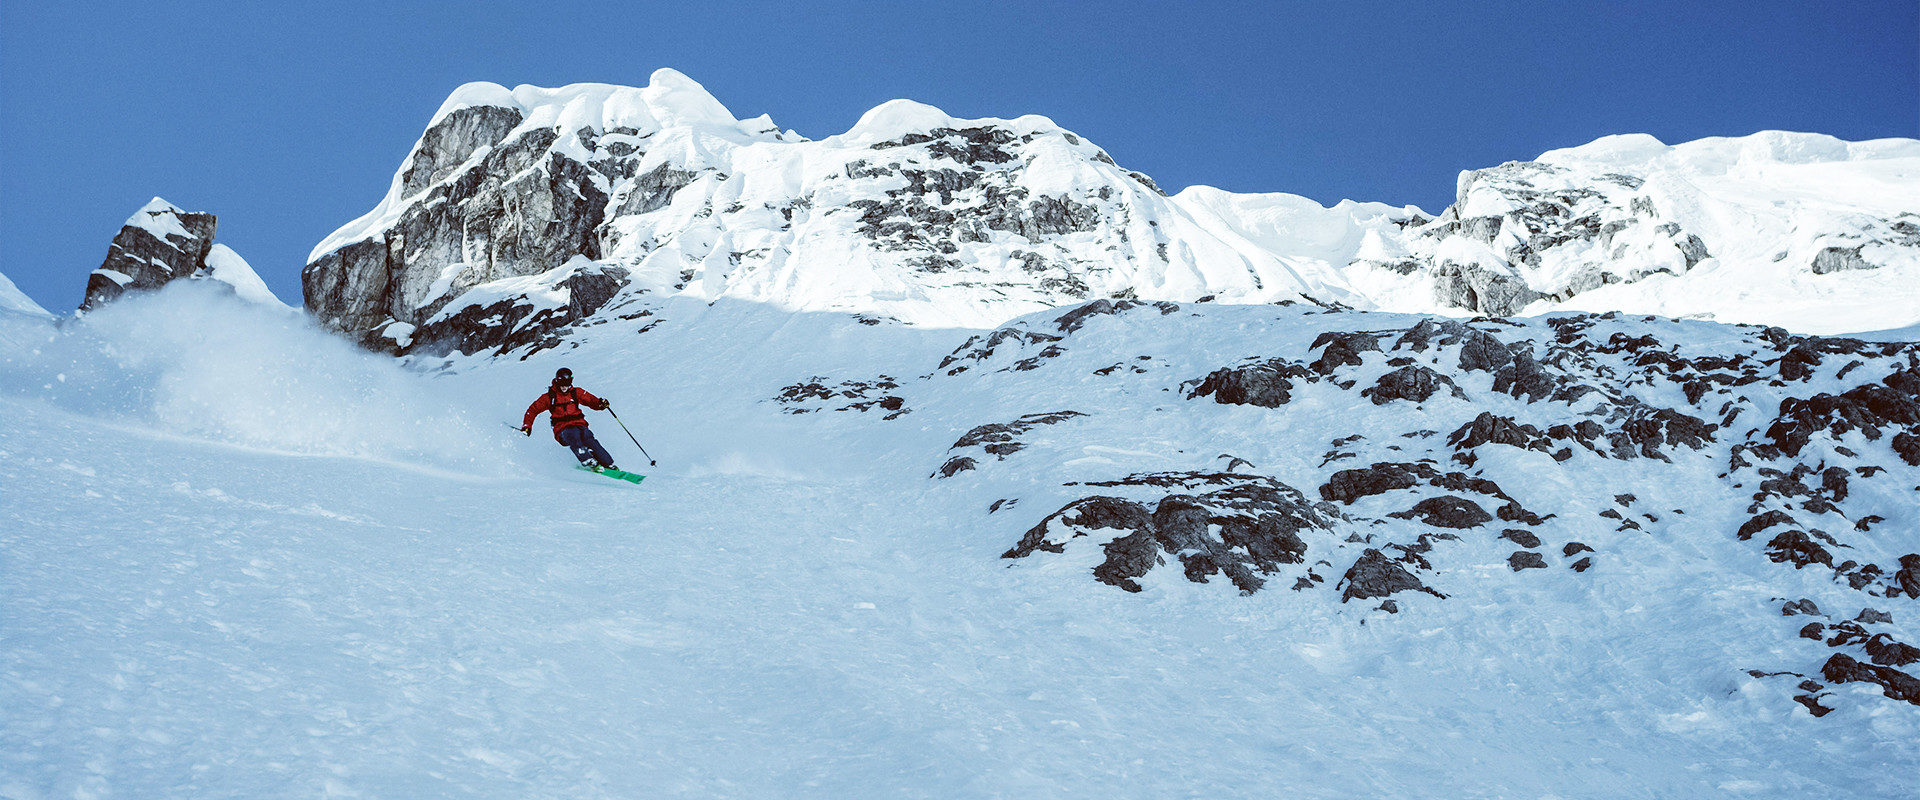 Björn Heregger bei einer anspruchsvollen Steilwandbefahrung in felsdurchsetzter Schneeflanke